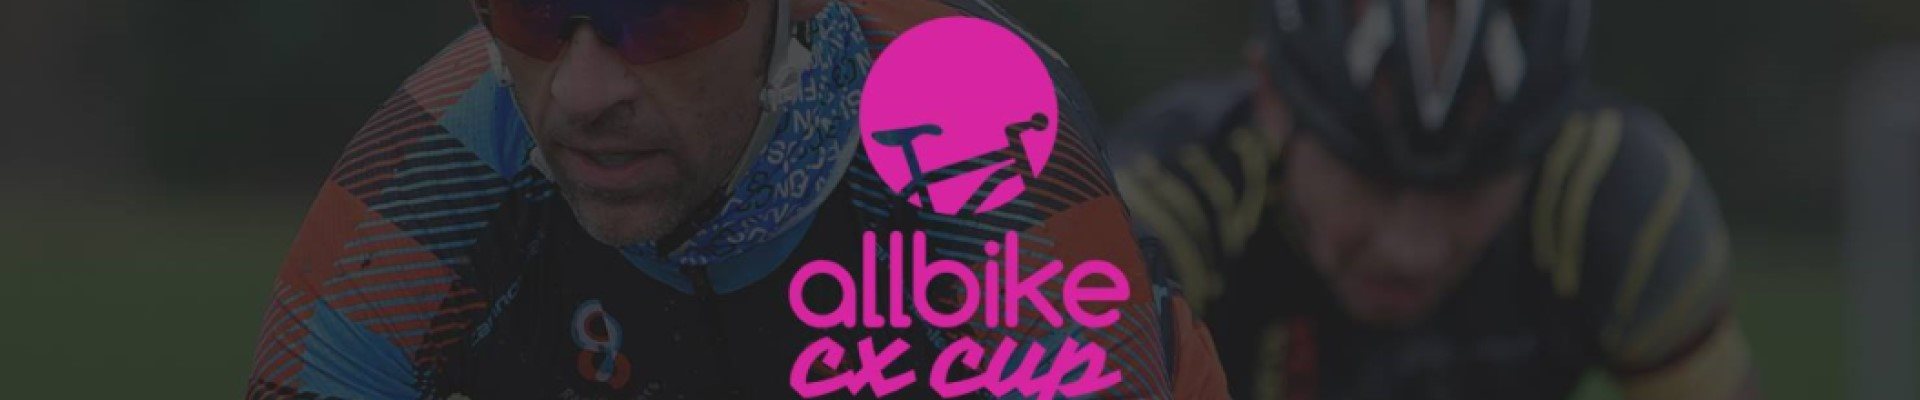 Allbike CX cup 19/20 #2 (Hasle Bakker)